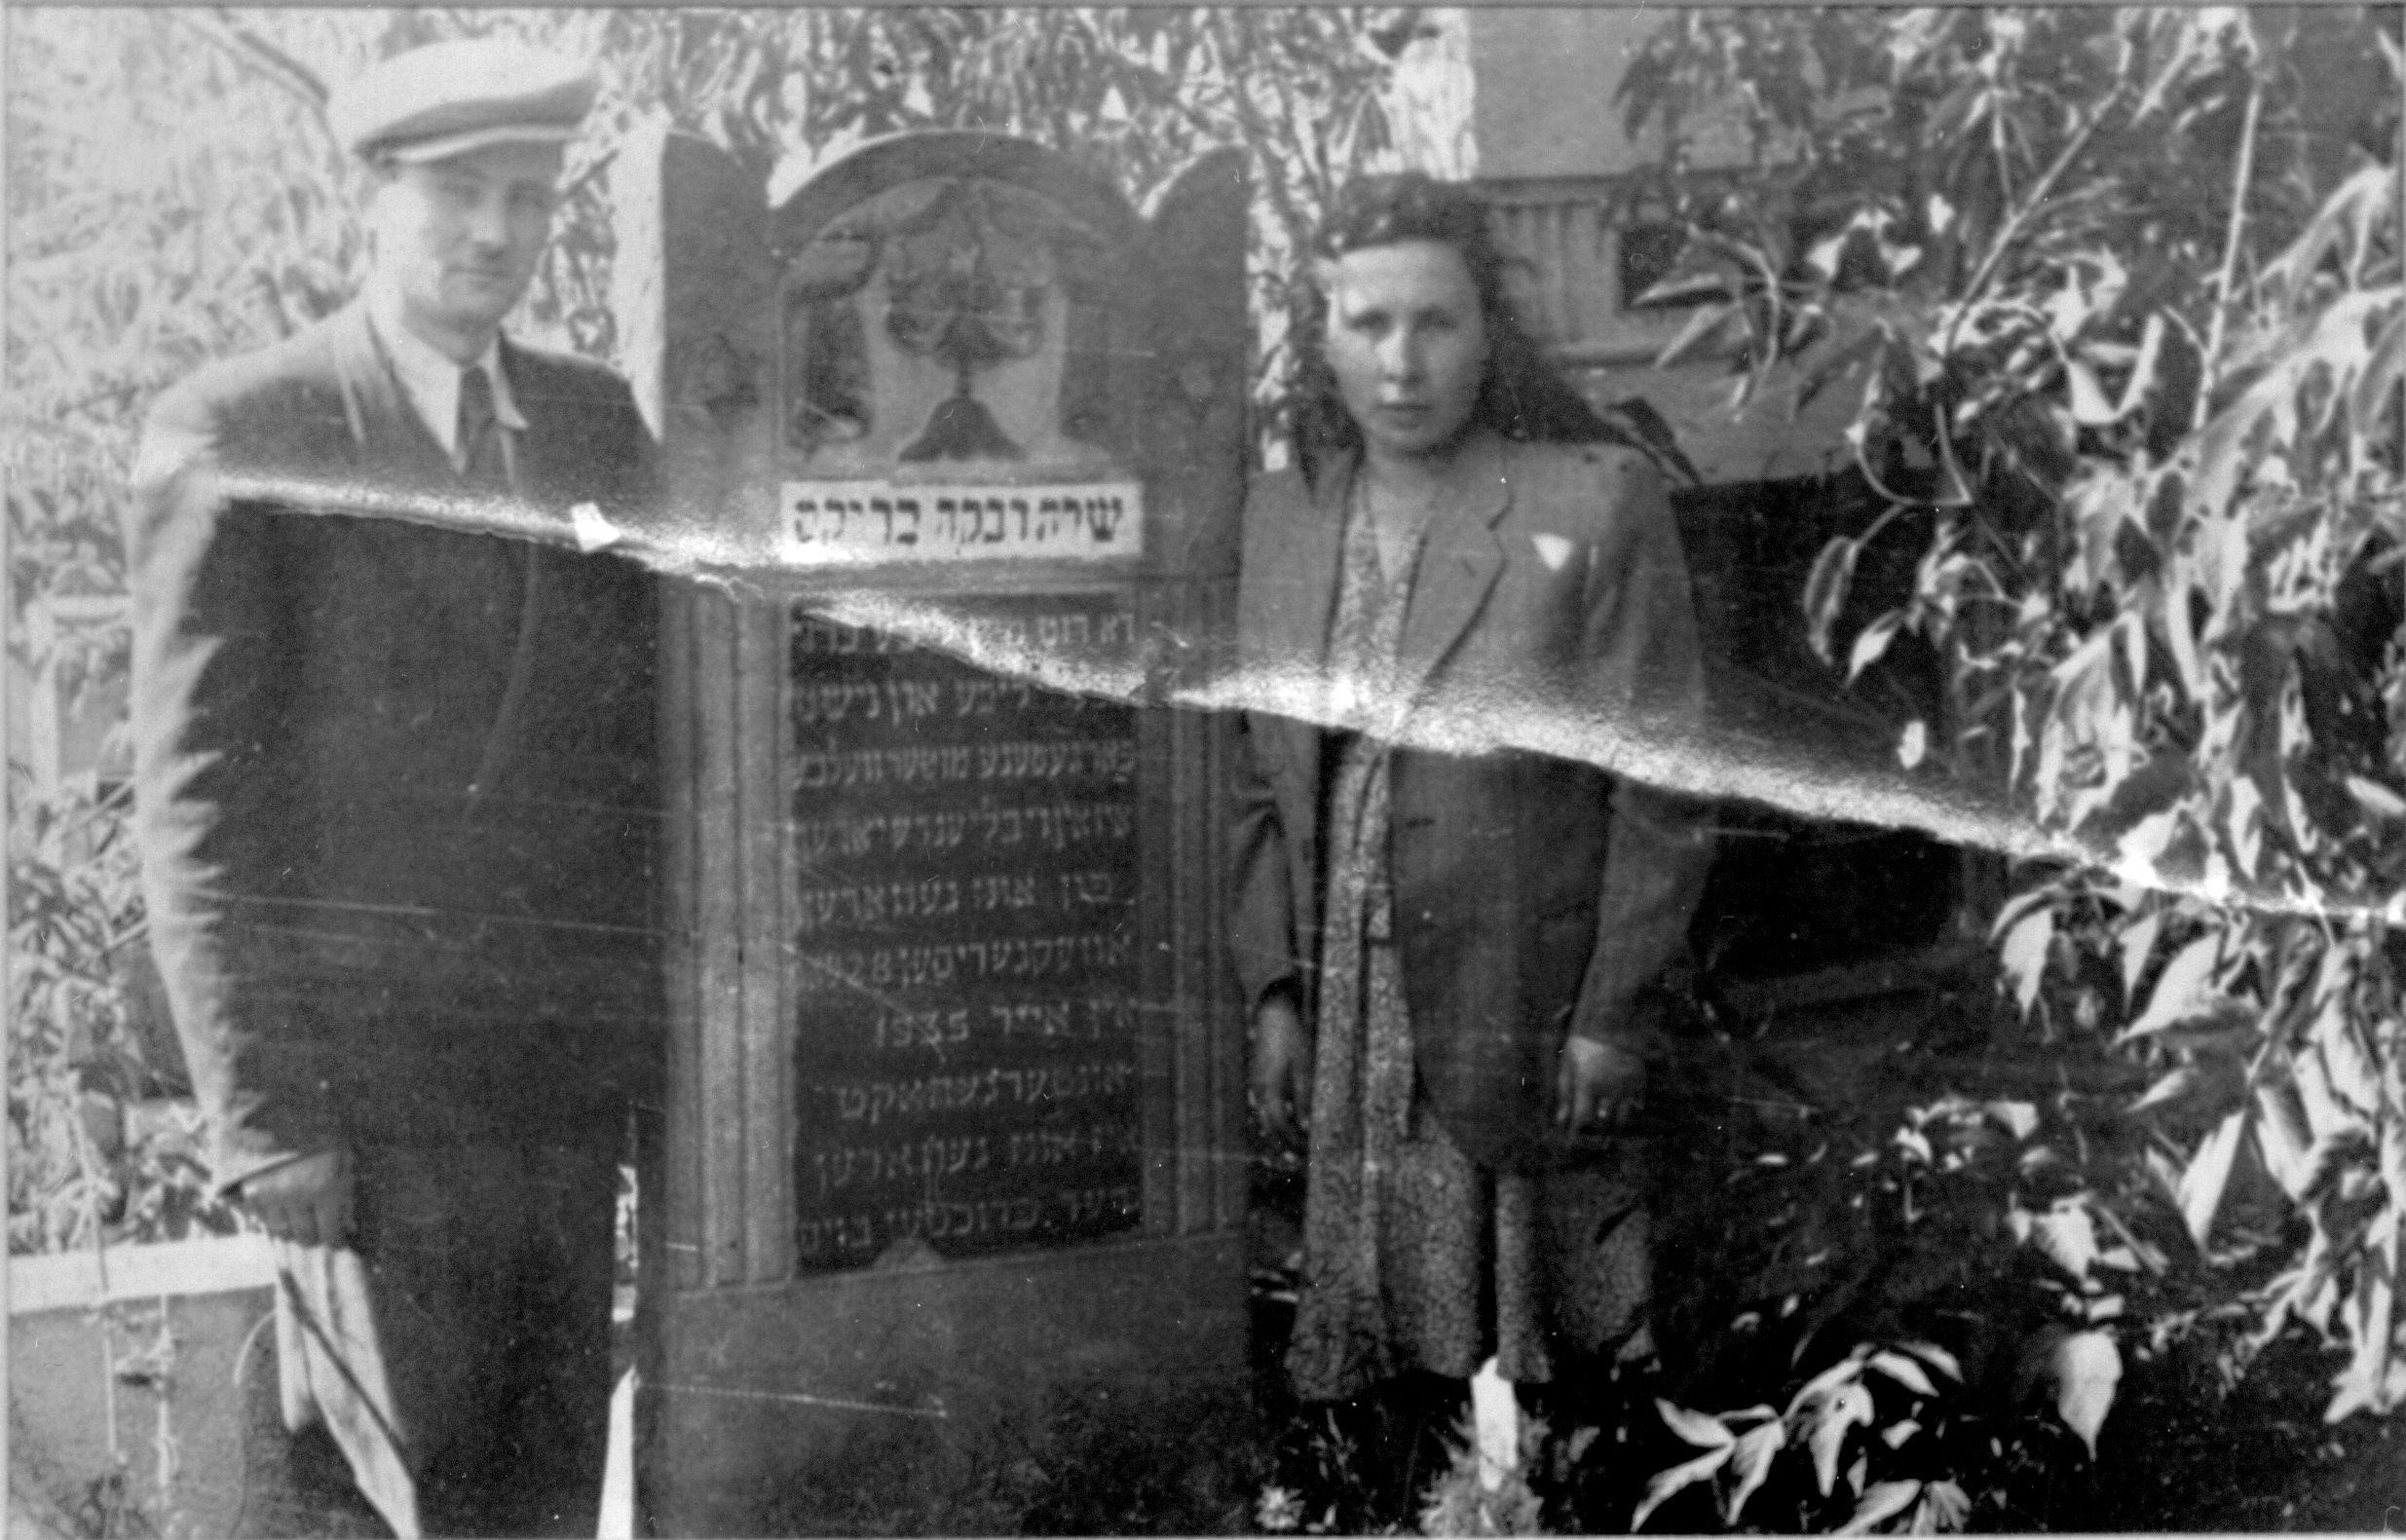 Bursztajn parents, Holocaust survivors